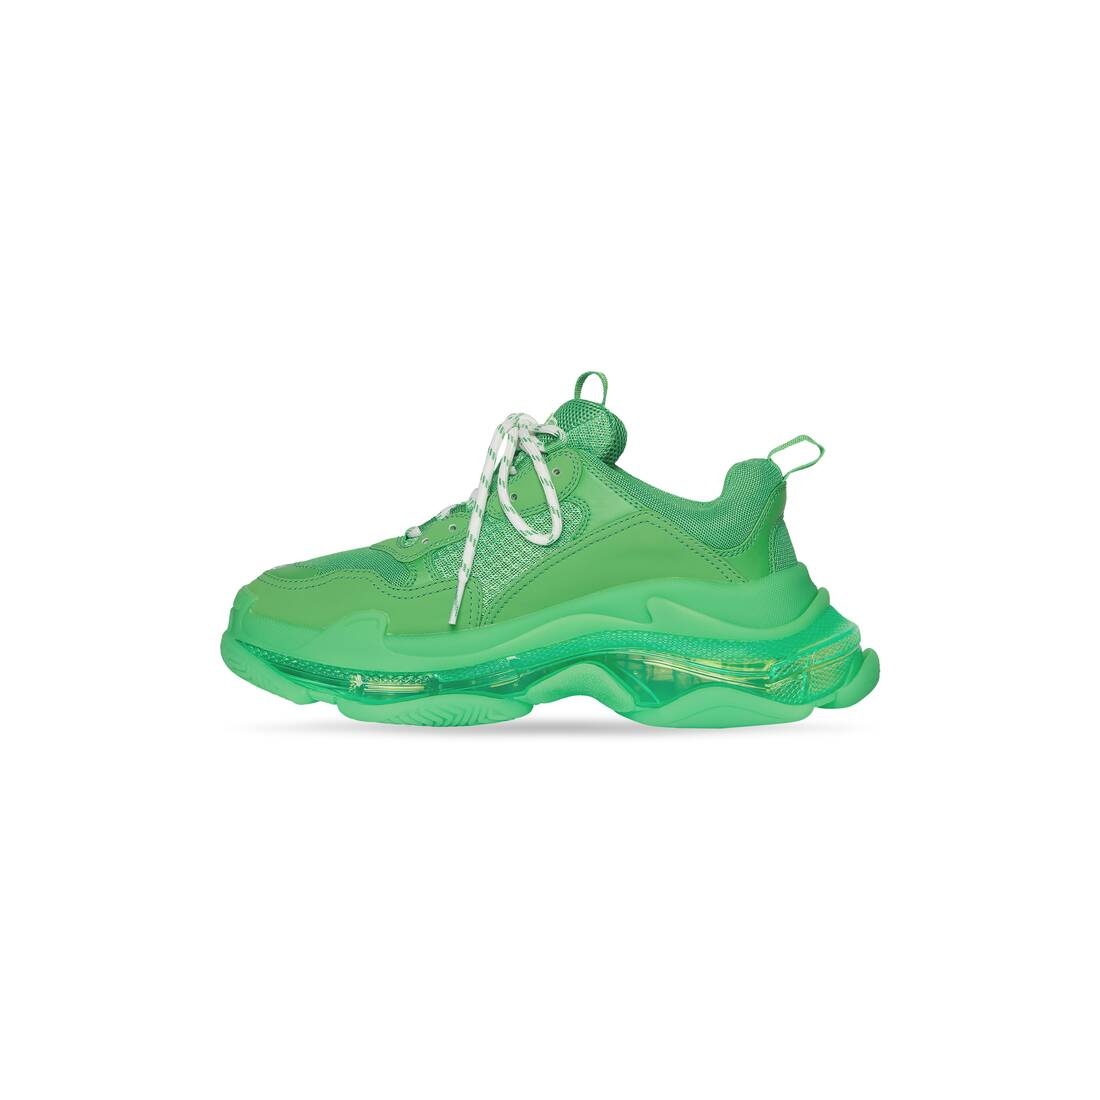 Men's Triple S Sneaker Clear Sole in Fluo Green - 4